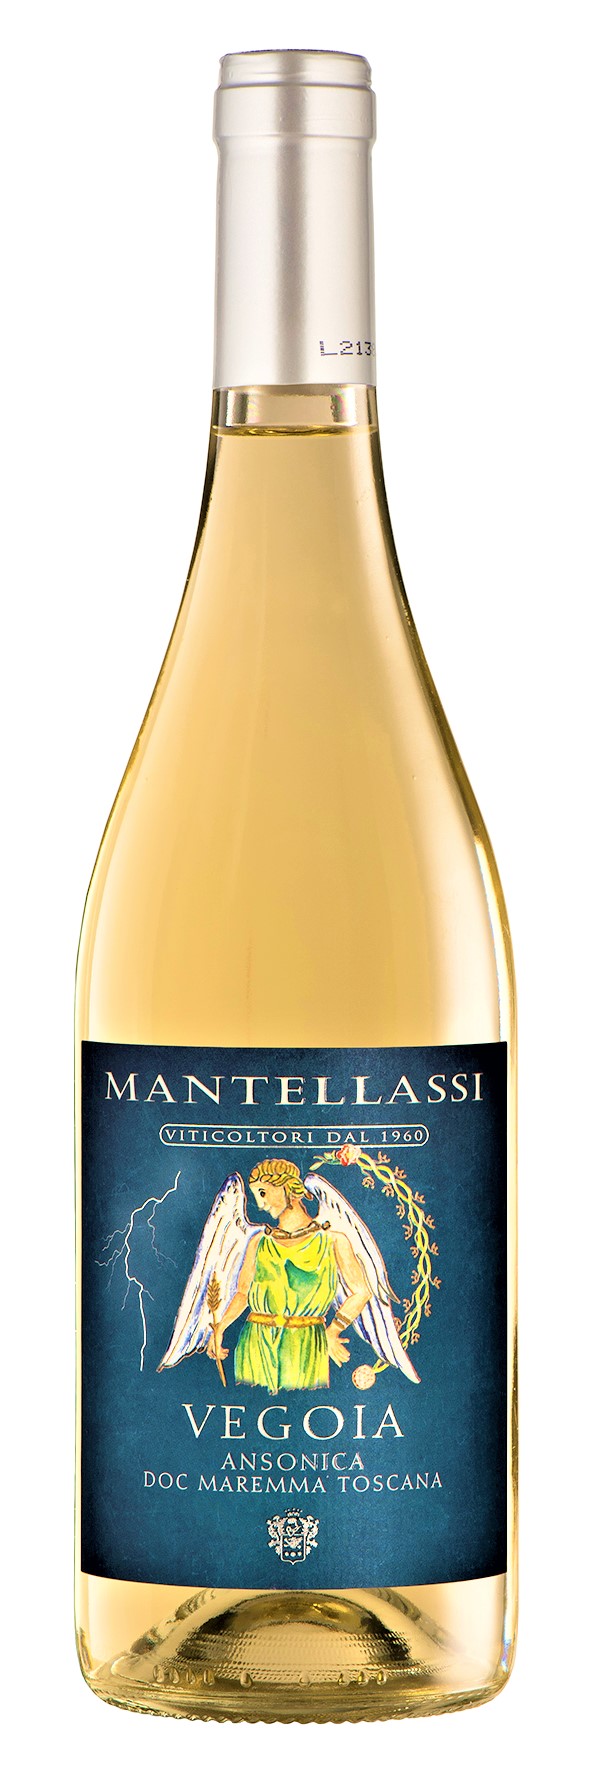 Fattoria Mantellassi presenta “Vegoia”, un bianco d’eccellenza da vitigno ansonica